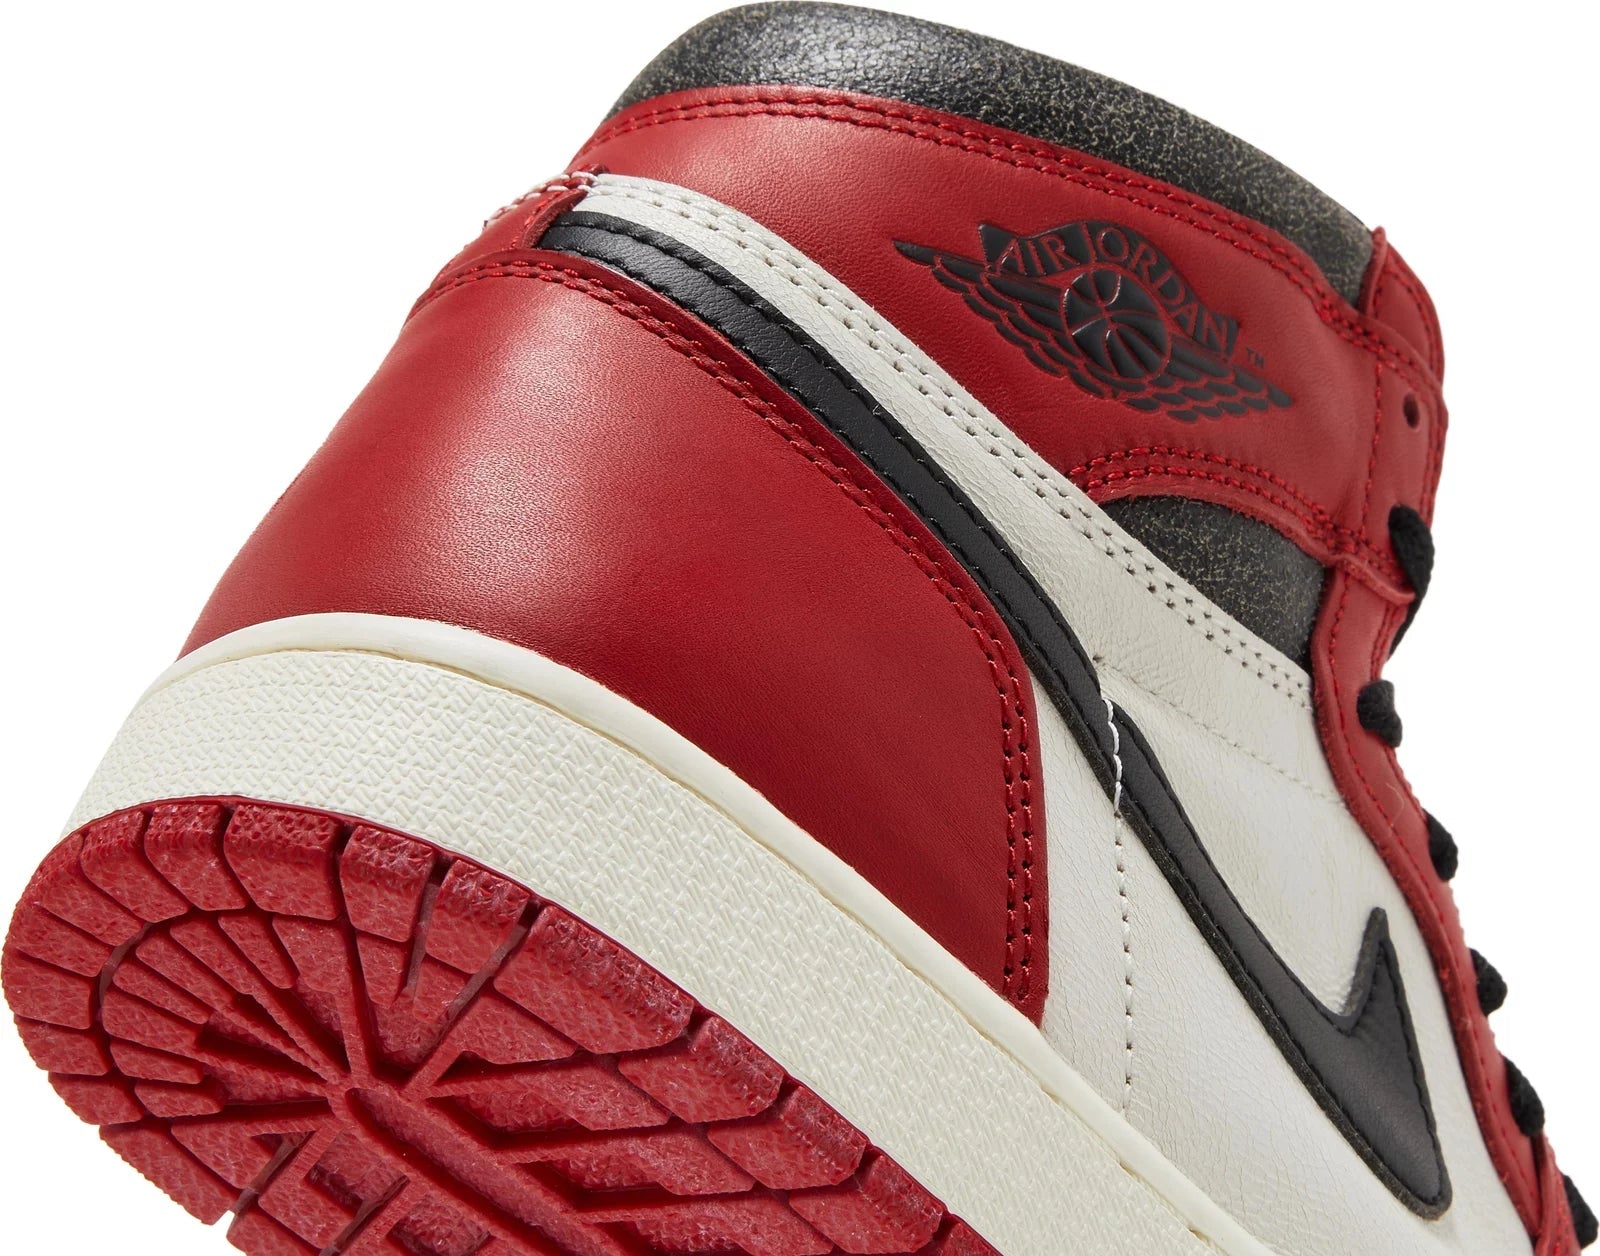 Air Jordan 1 Retro High OG Lost and Found - Sneakersbe Sneakers Sale Online